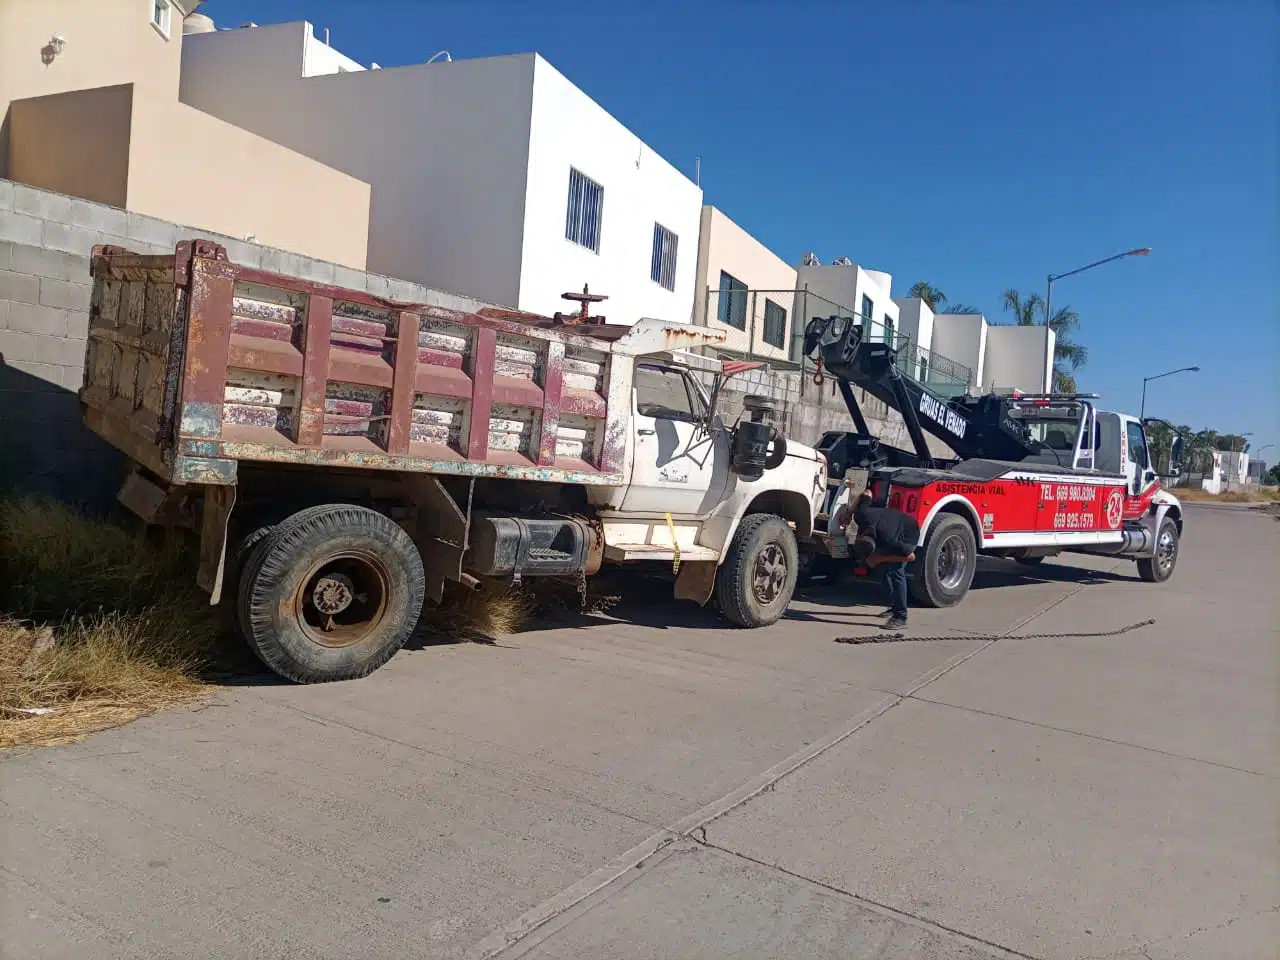 Sigue la limpia de vehículos abandonados en calles de Mazatlán